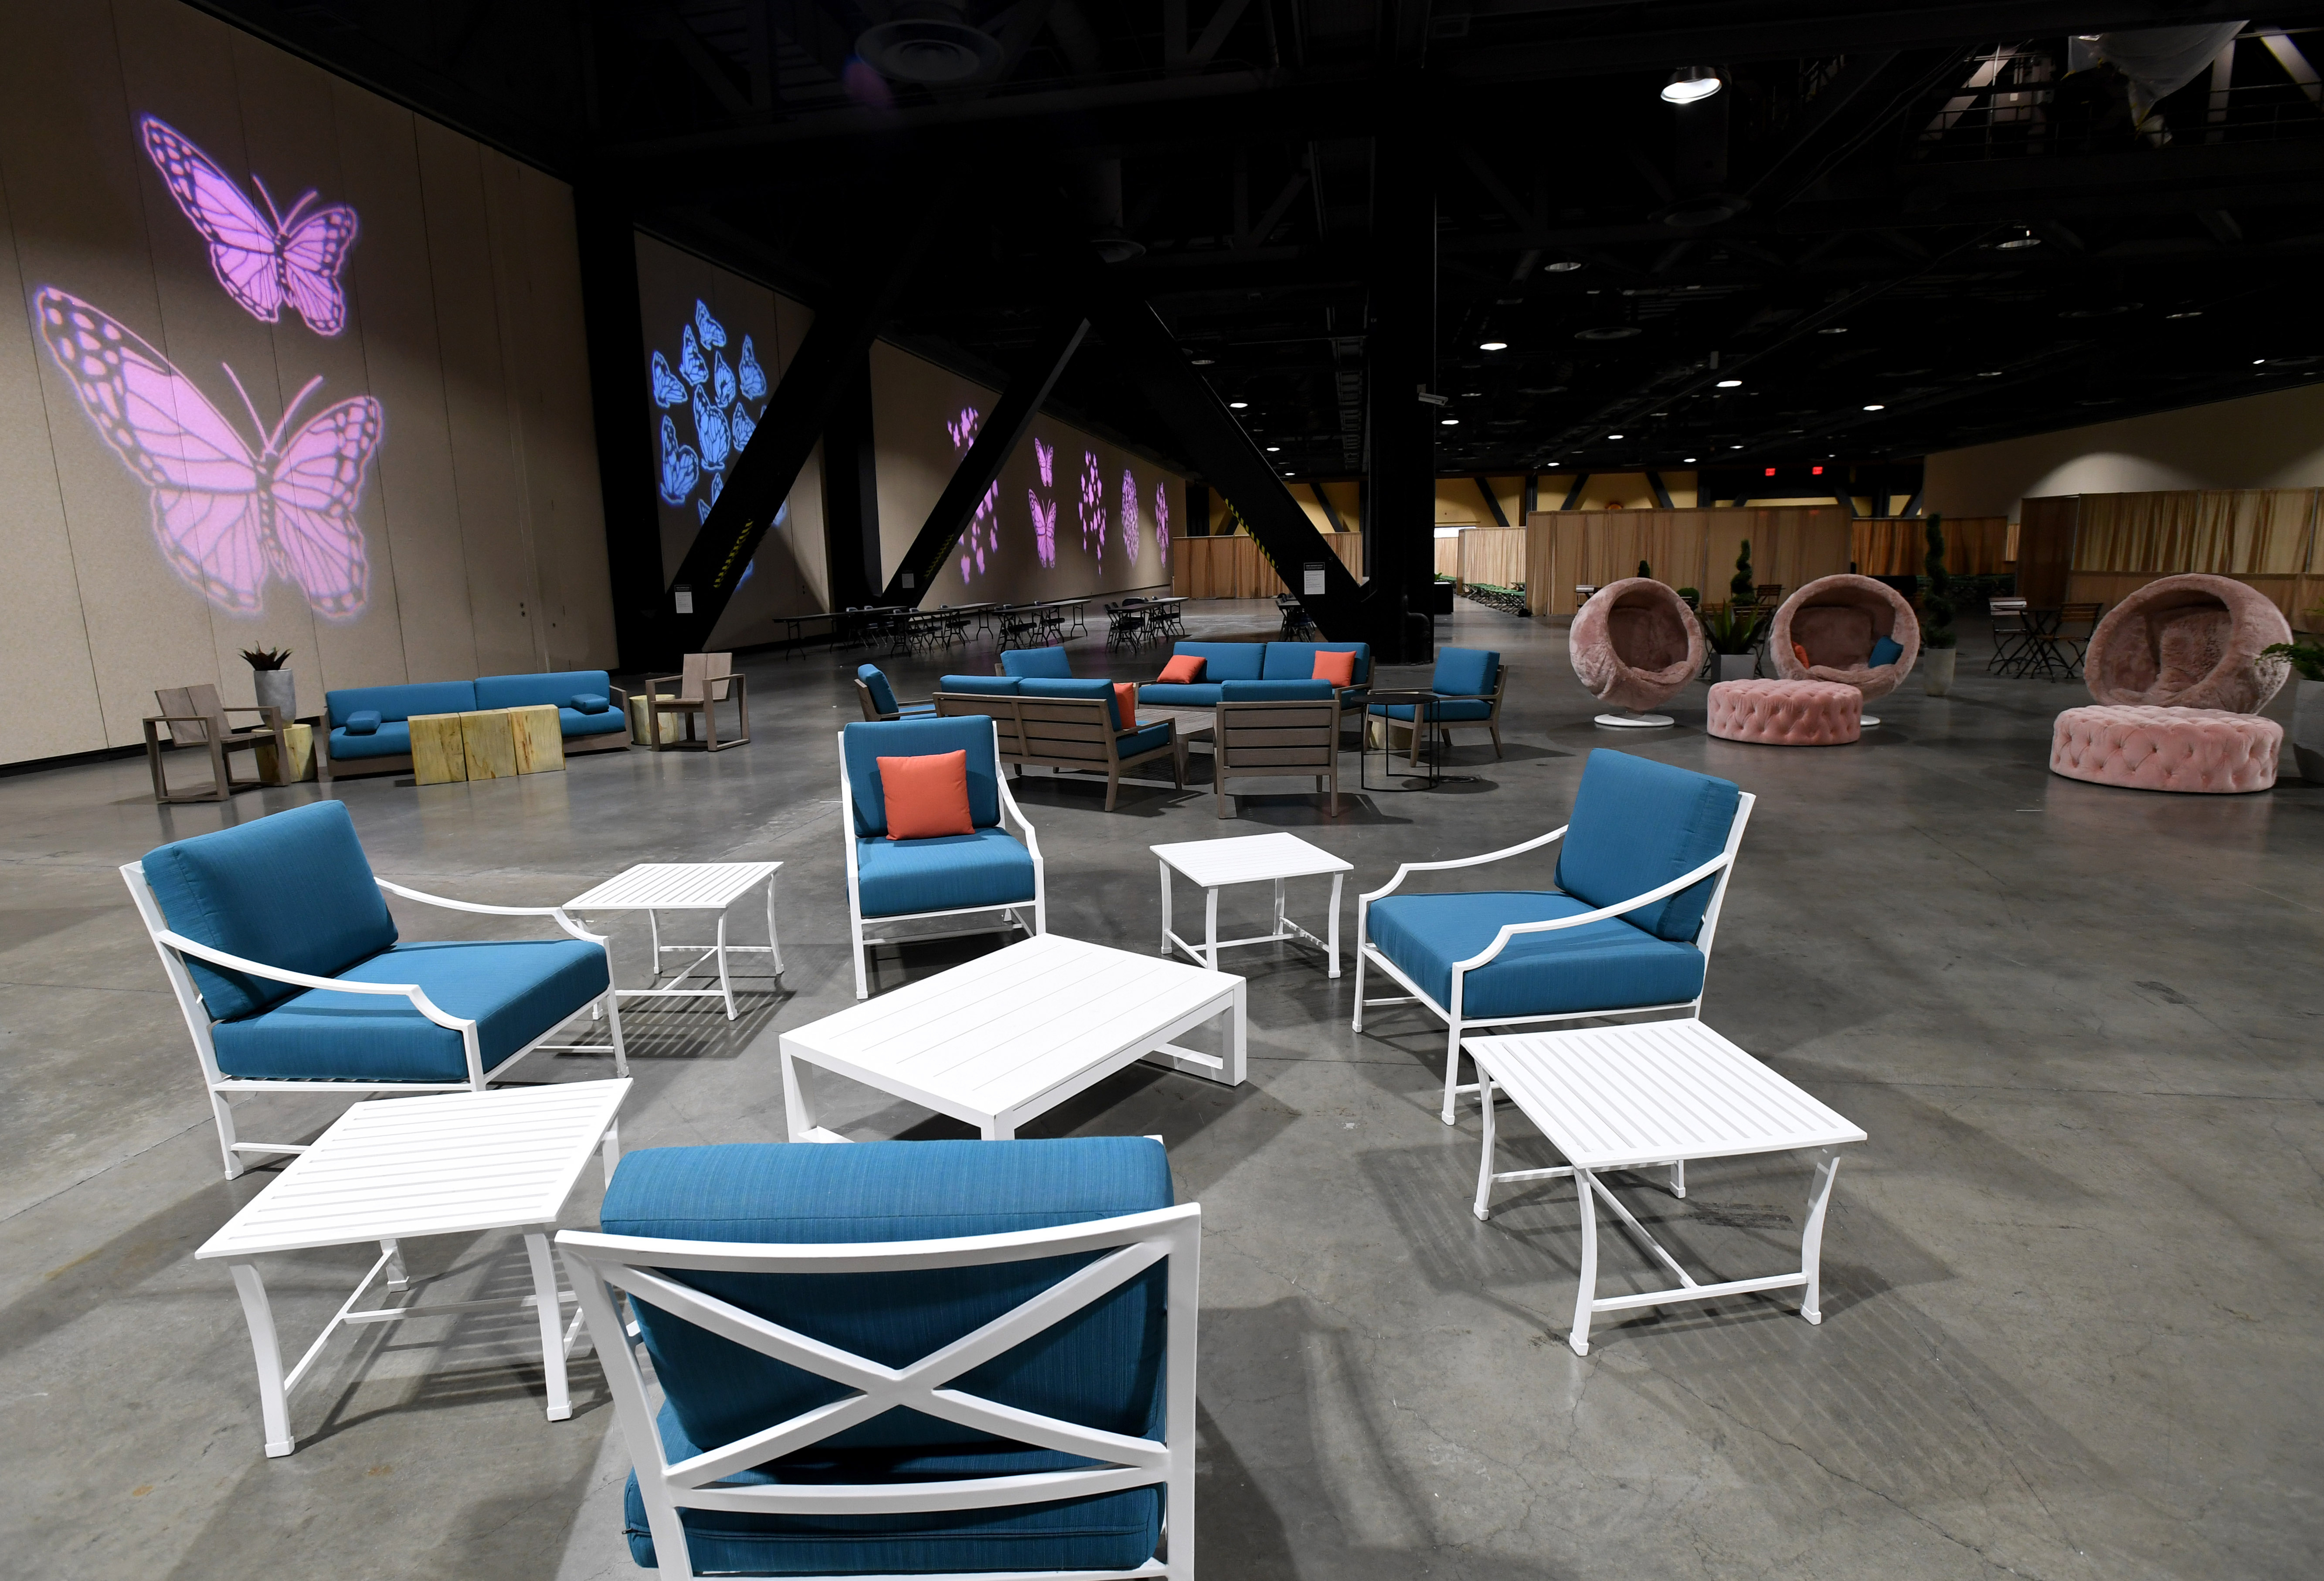 La sala de estar instalada dentro de la Sala de exposiciones B para niños migrantes se muestra durante un recorrido por el Centro de Convenciones de Long Beach el 22 de abril de 2021 en Long Beach, California.